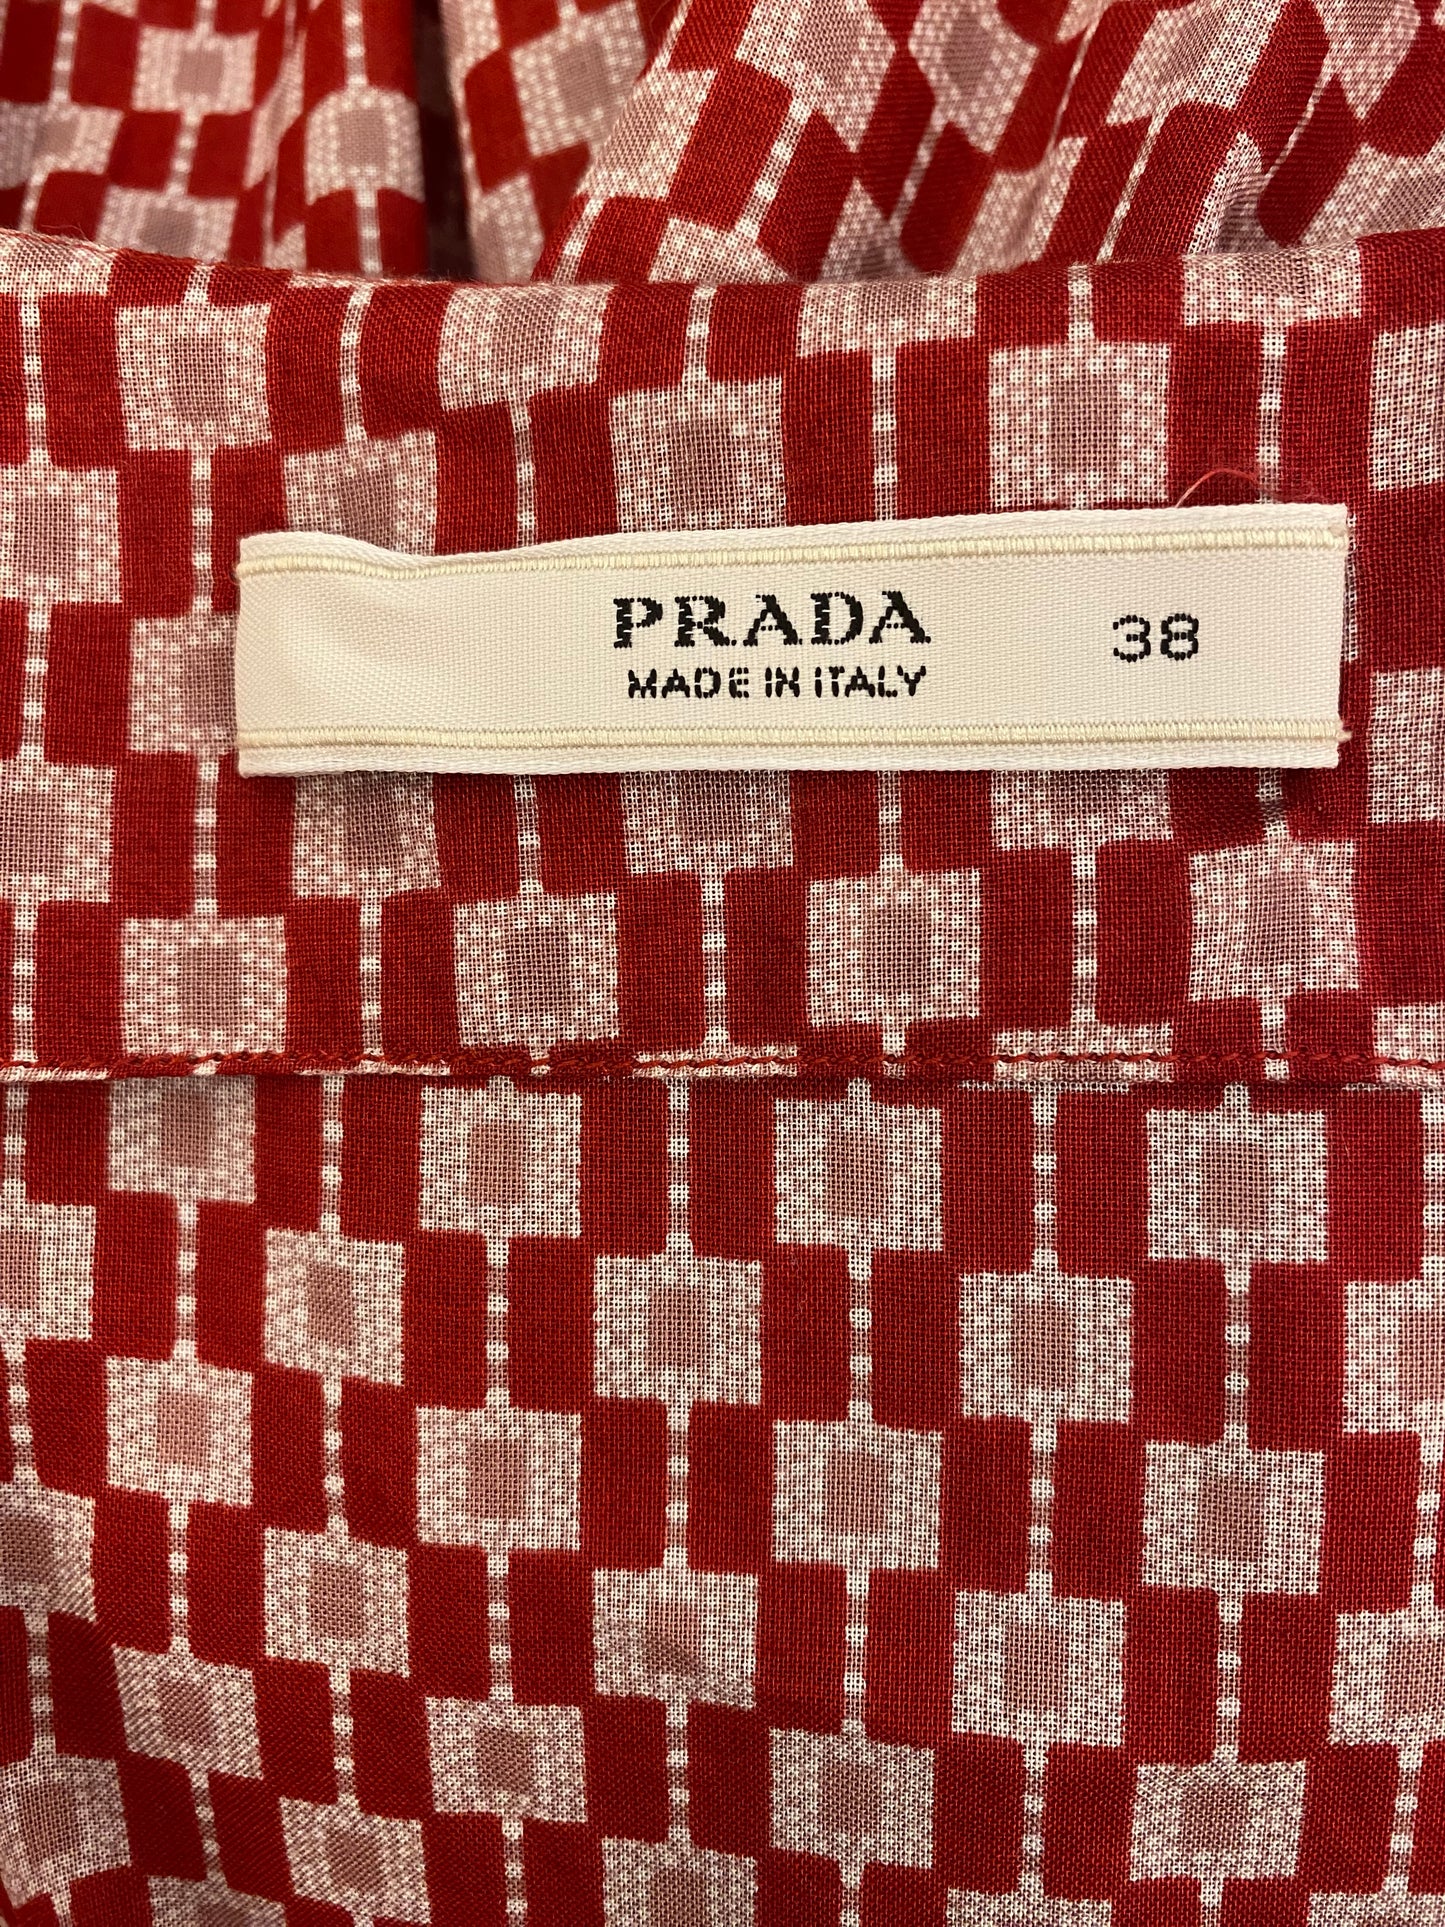 PRADA Cotton Dress Size It 38 Eu 34/36